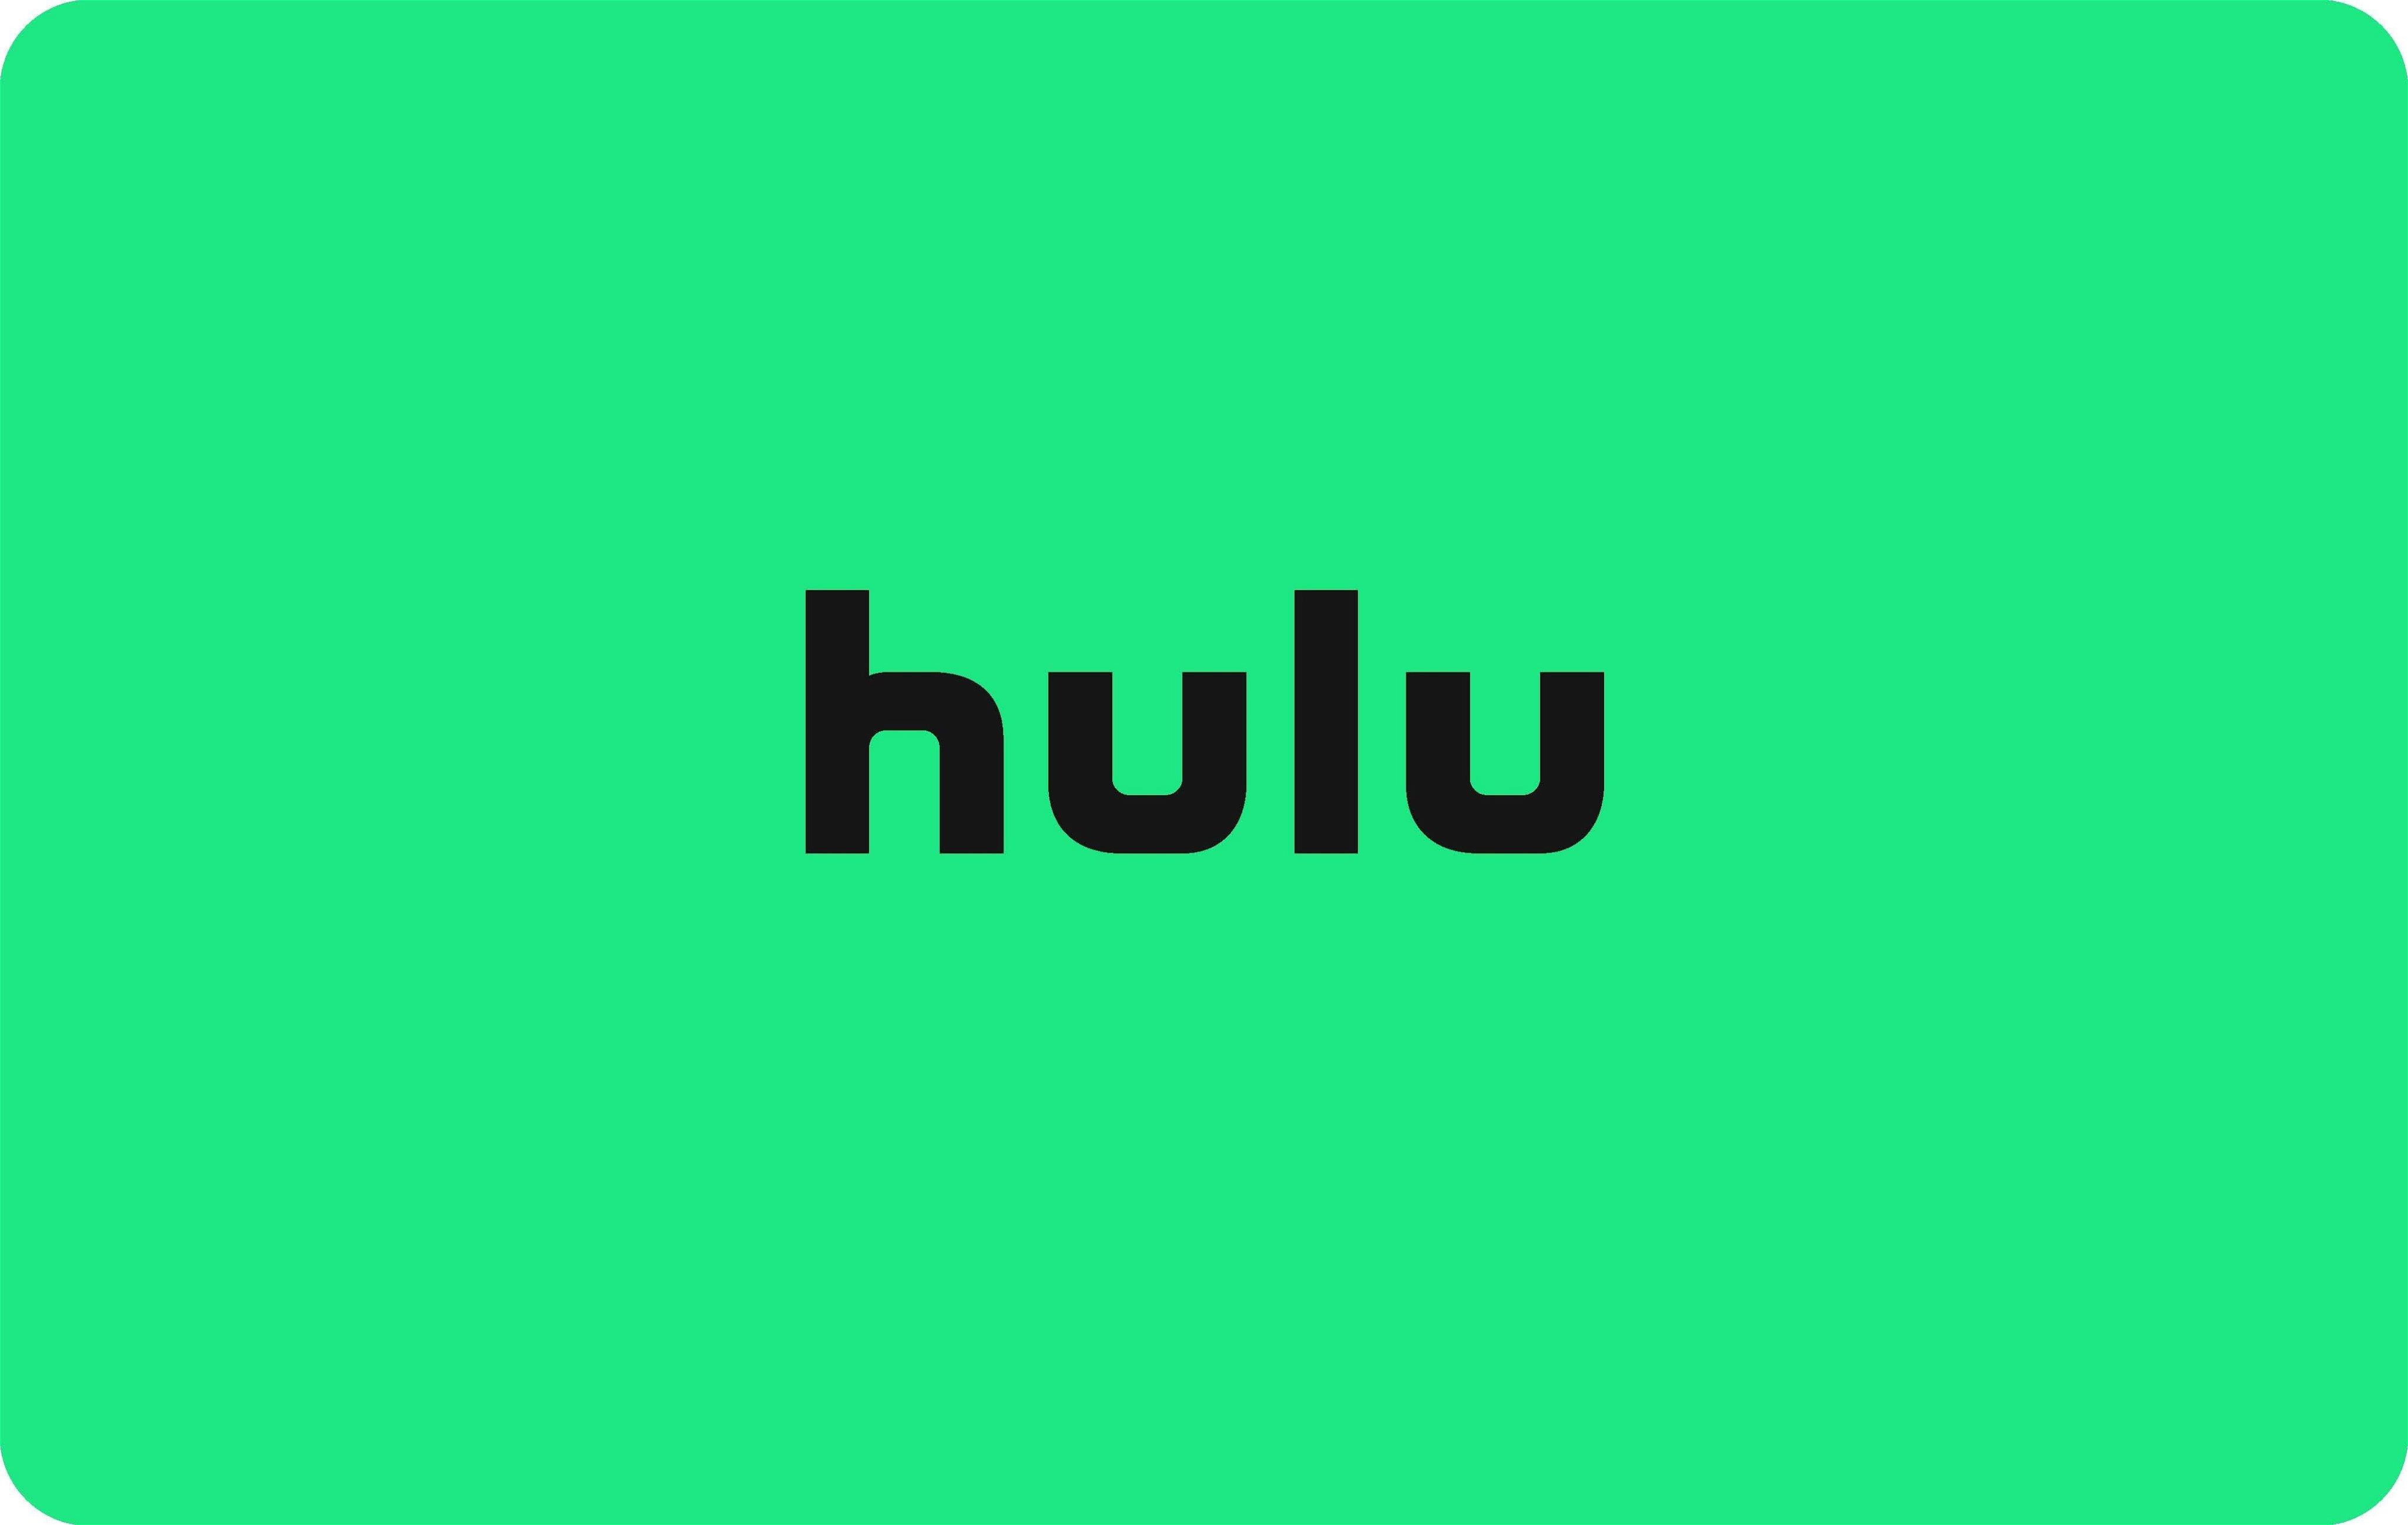 Hulu ya no permite registros de nuevas cuentas a través de la aplicación de Android